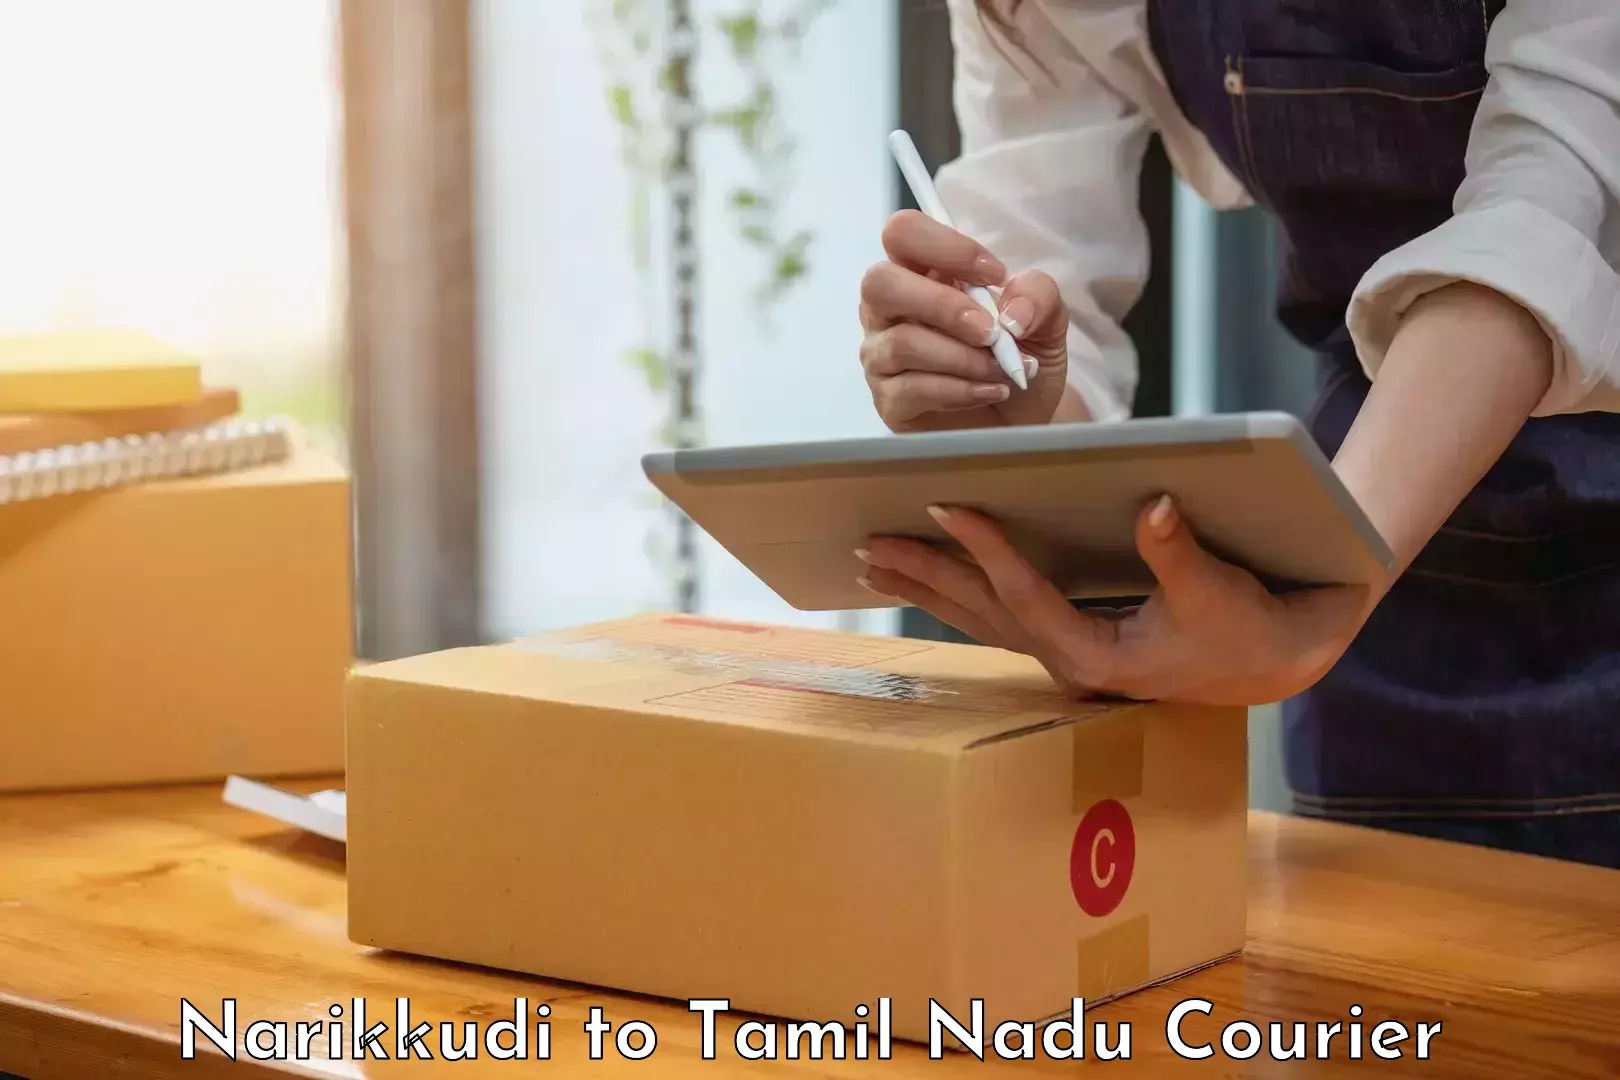 Courier app Narikkudi to Anna University Chennai